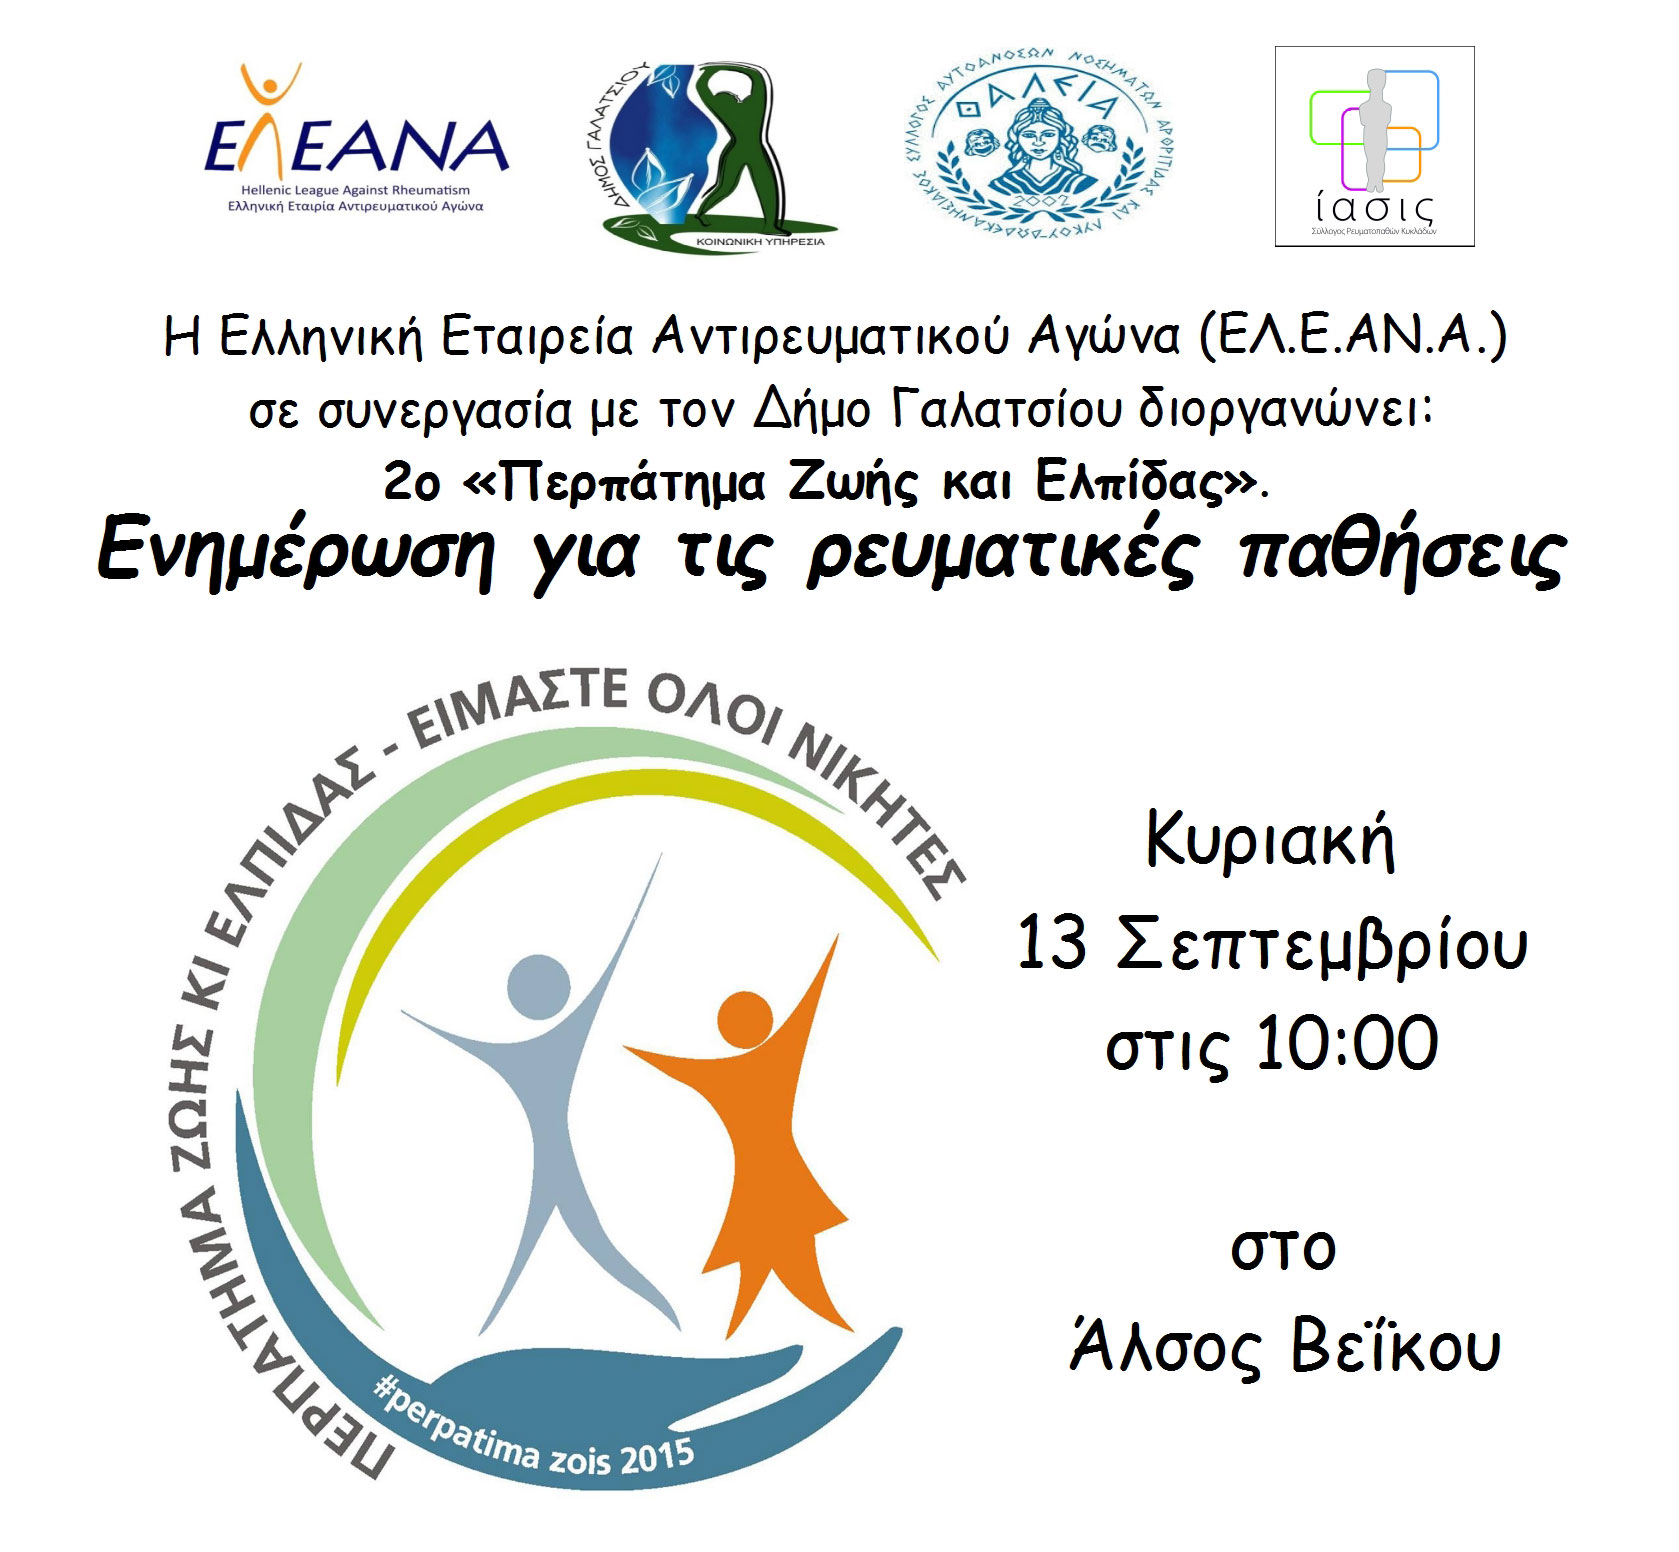 «Περπάτημα Ζωής και Ελπίδας» διοργανώνει η Ελληνική Εταιρεία Αντιρευματικού Αγώνα